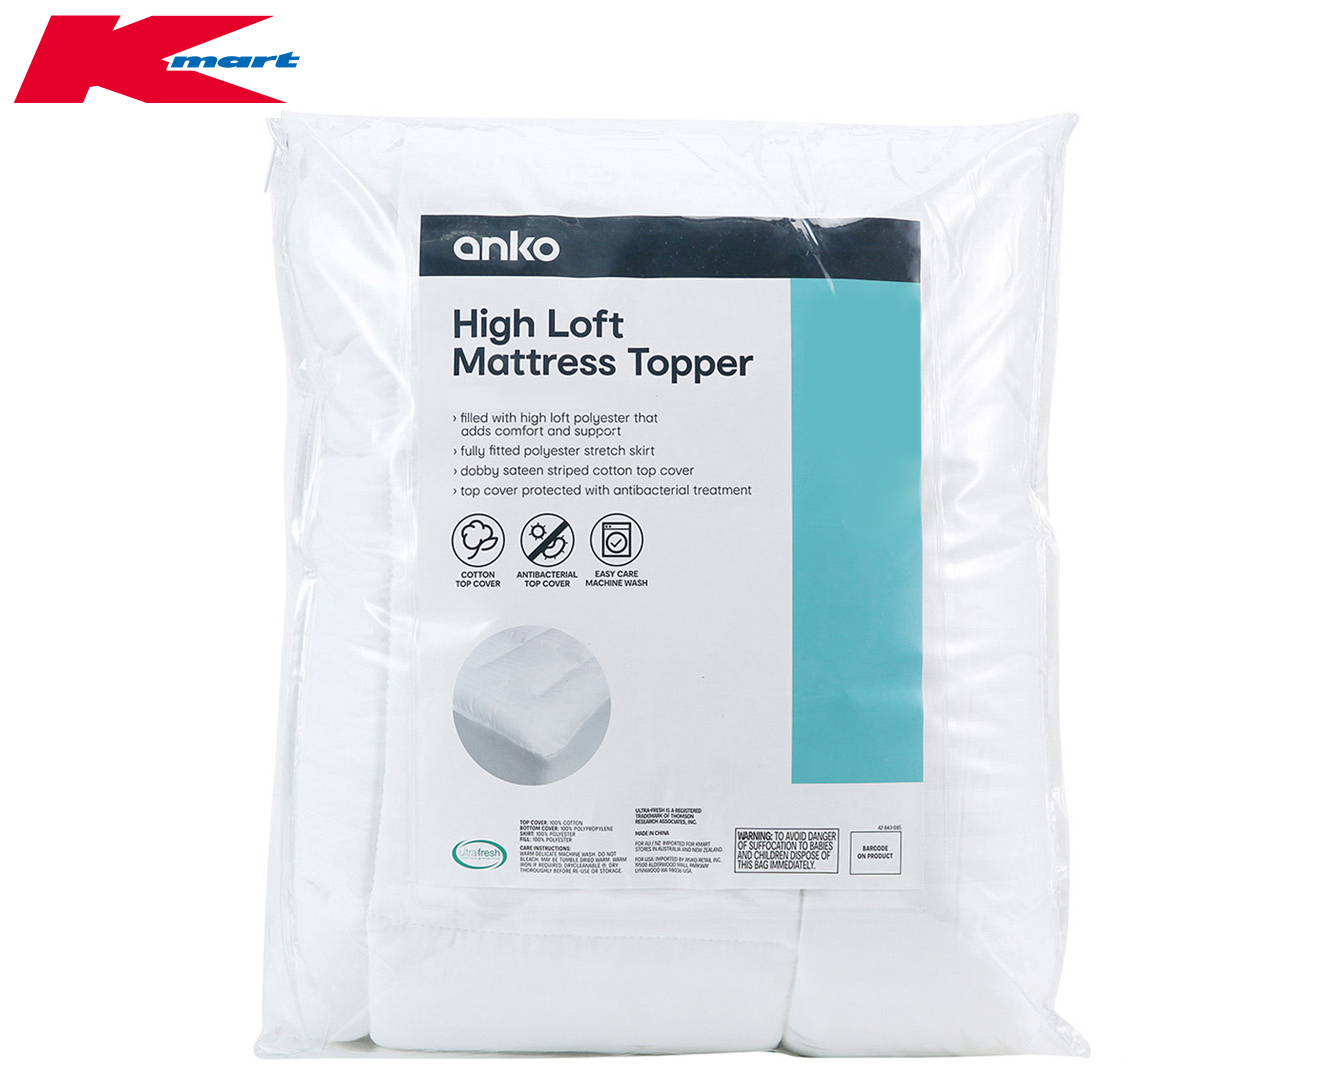 anko high loft mattress topper